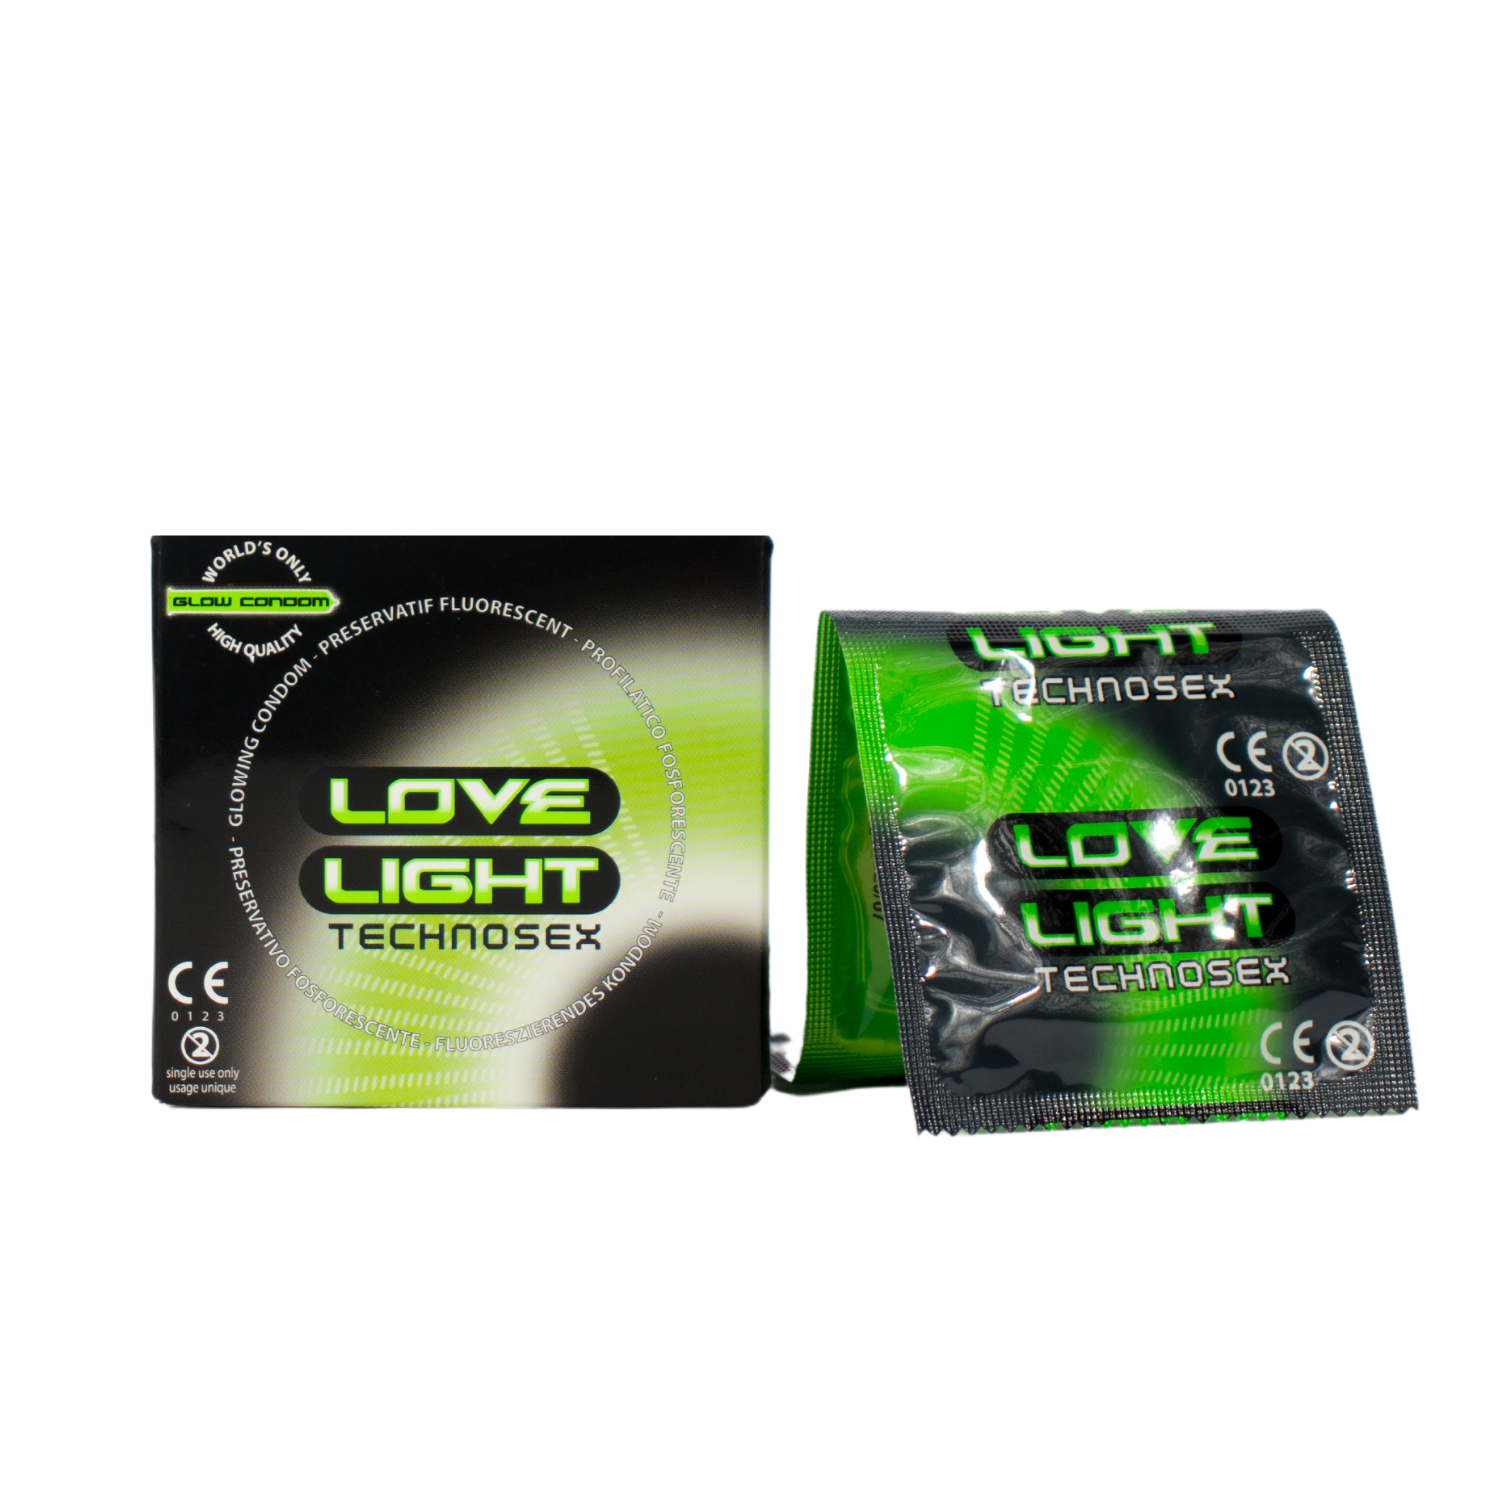 Doosje met 3 glow in the dark condooms van Sugant, te koop bij Flavourez.